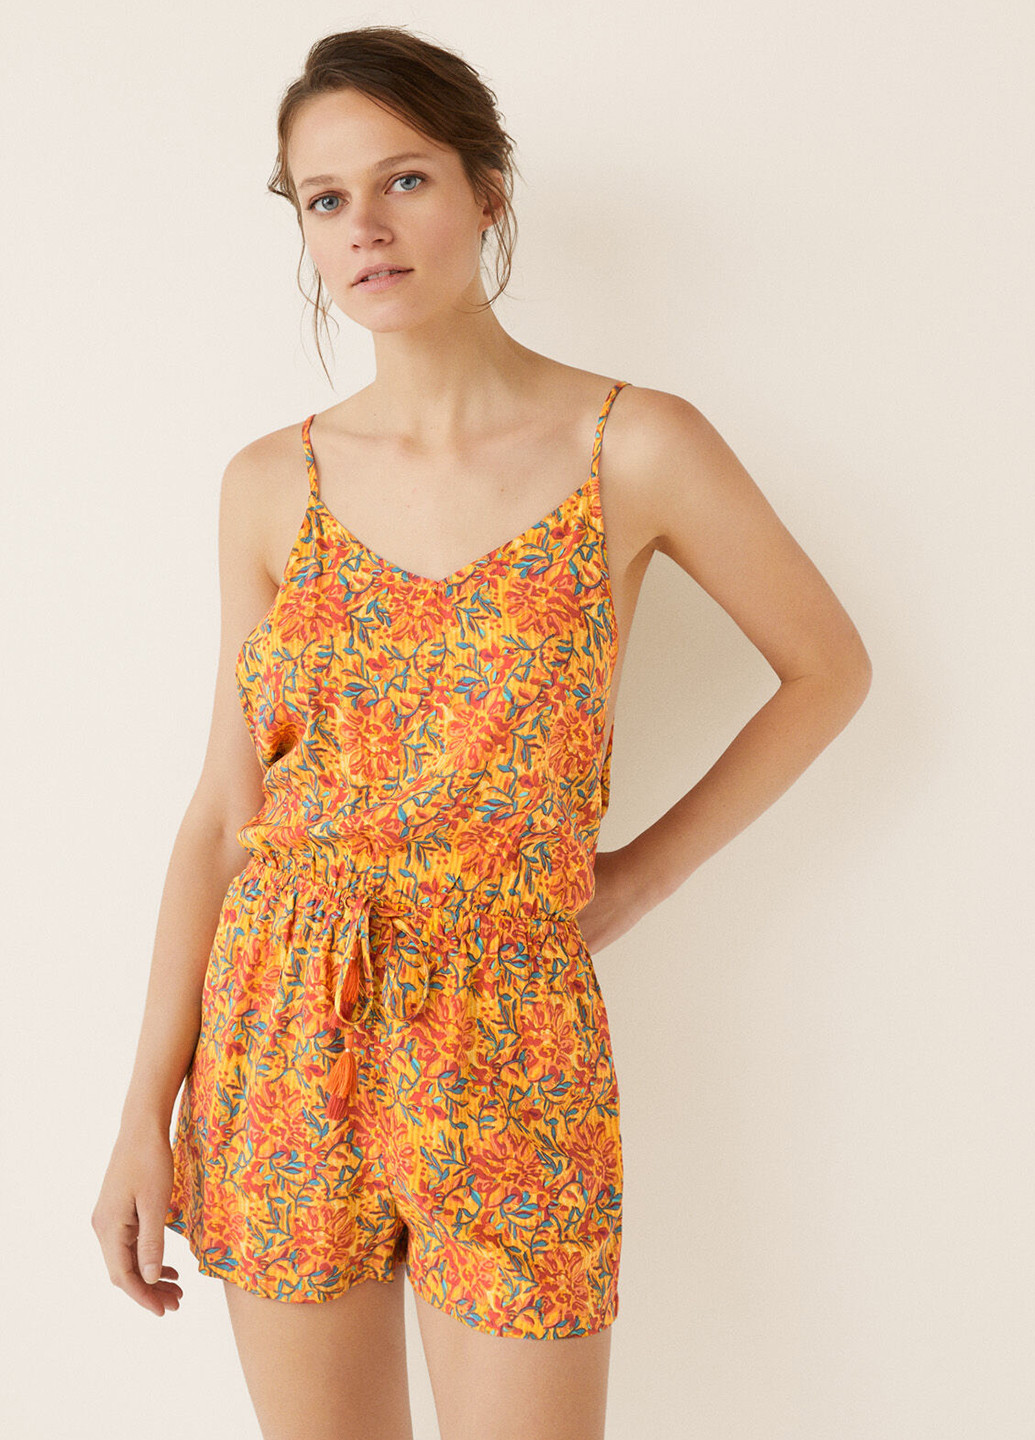 Комбинезон Women'secret комбинезон-шорты цветочный оранжевый пляжный вискоза